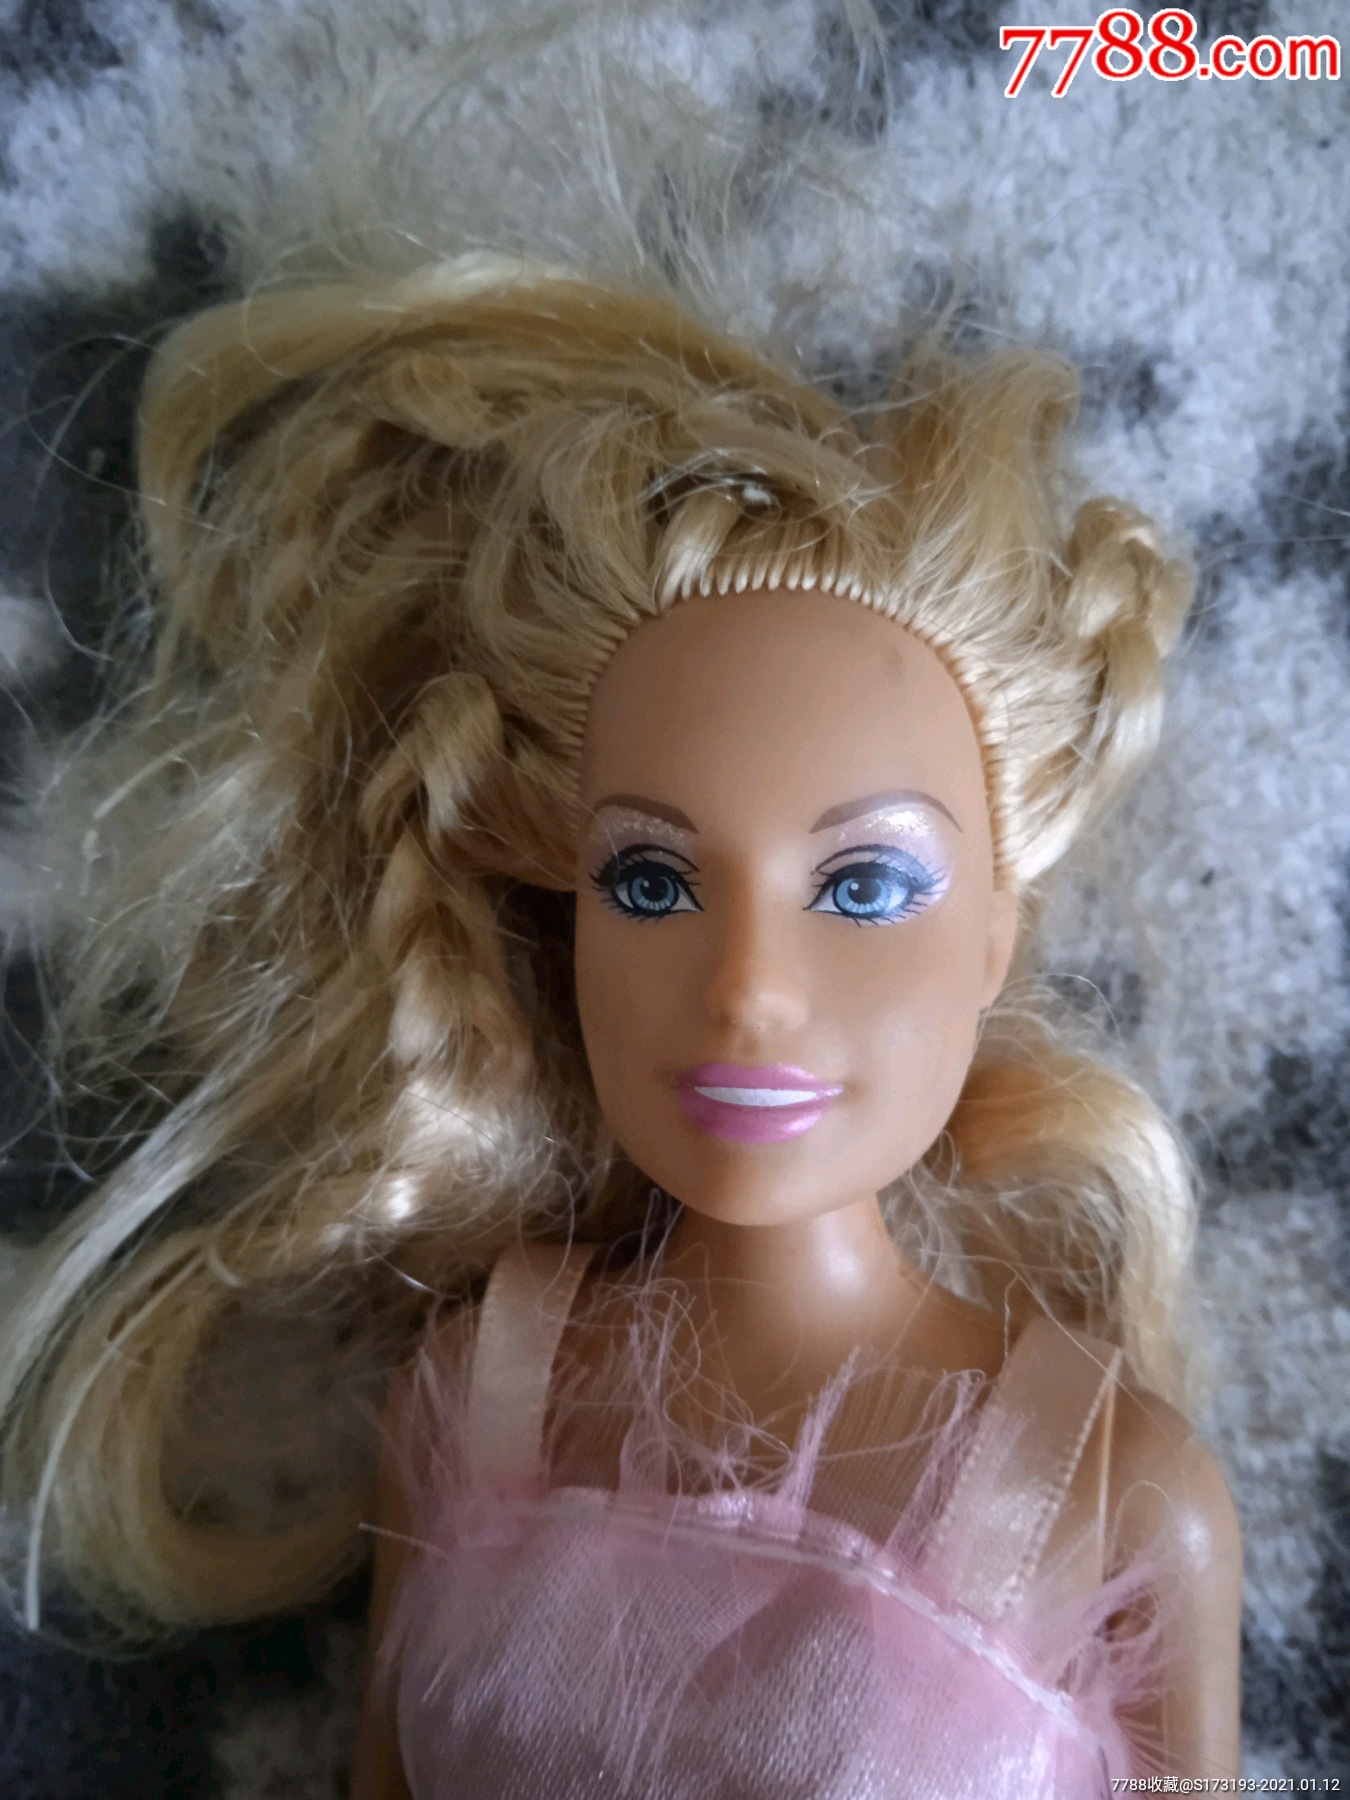 芭比娃娃祖国版一个头发有些散乱衣服有些开线